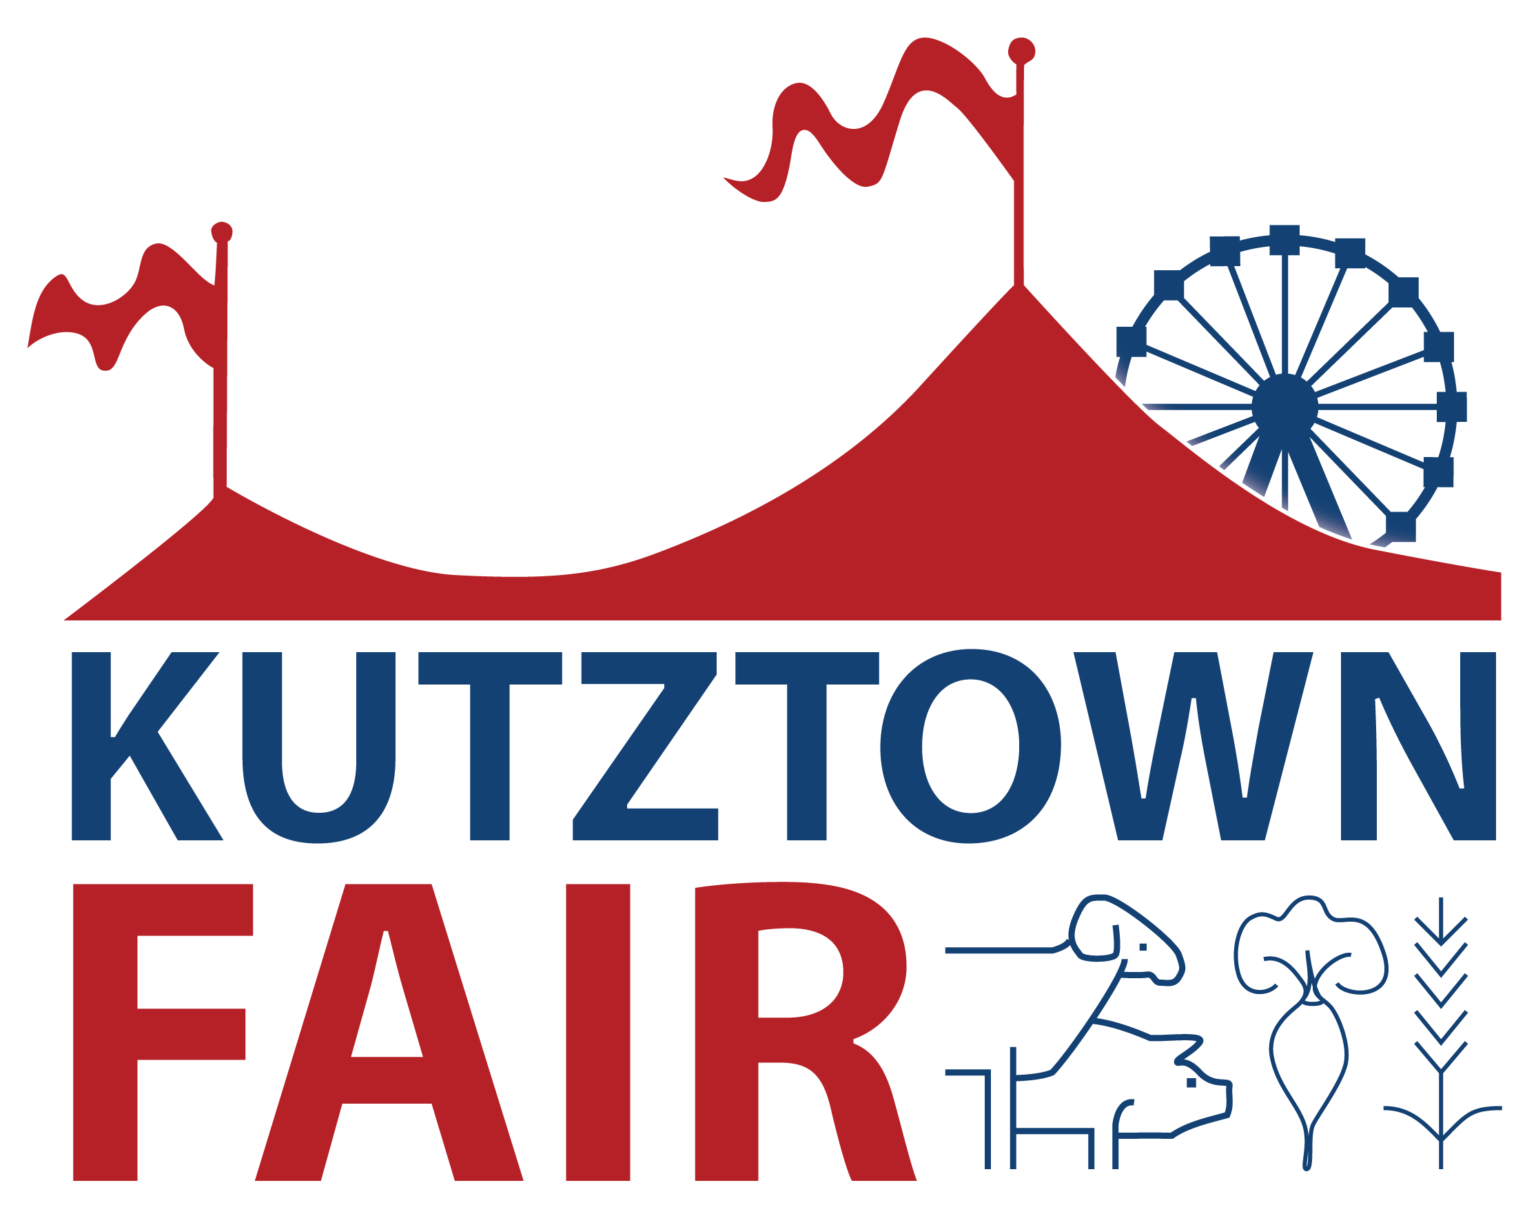 Celebrating Over 150 Years Kutztown Fair